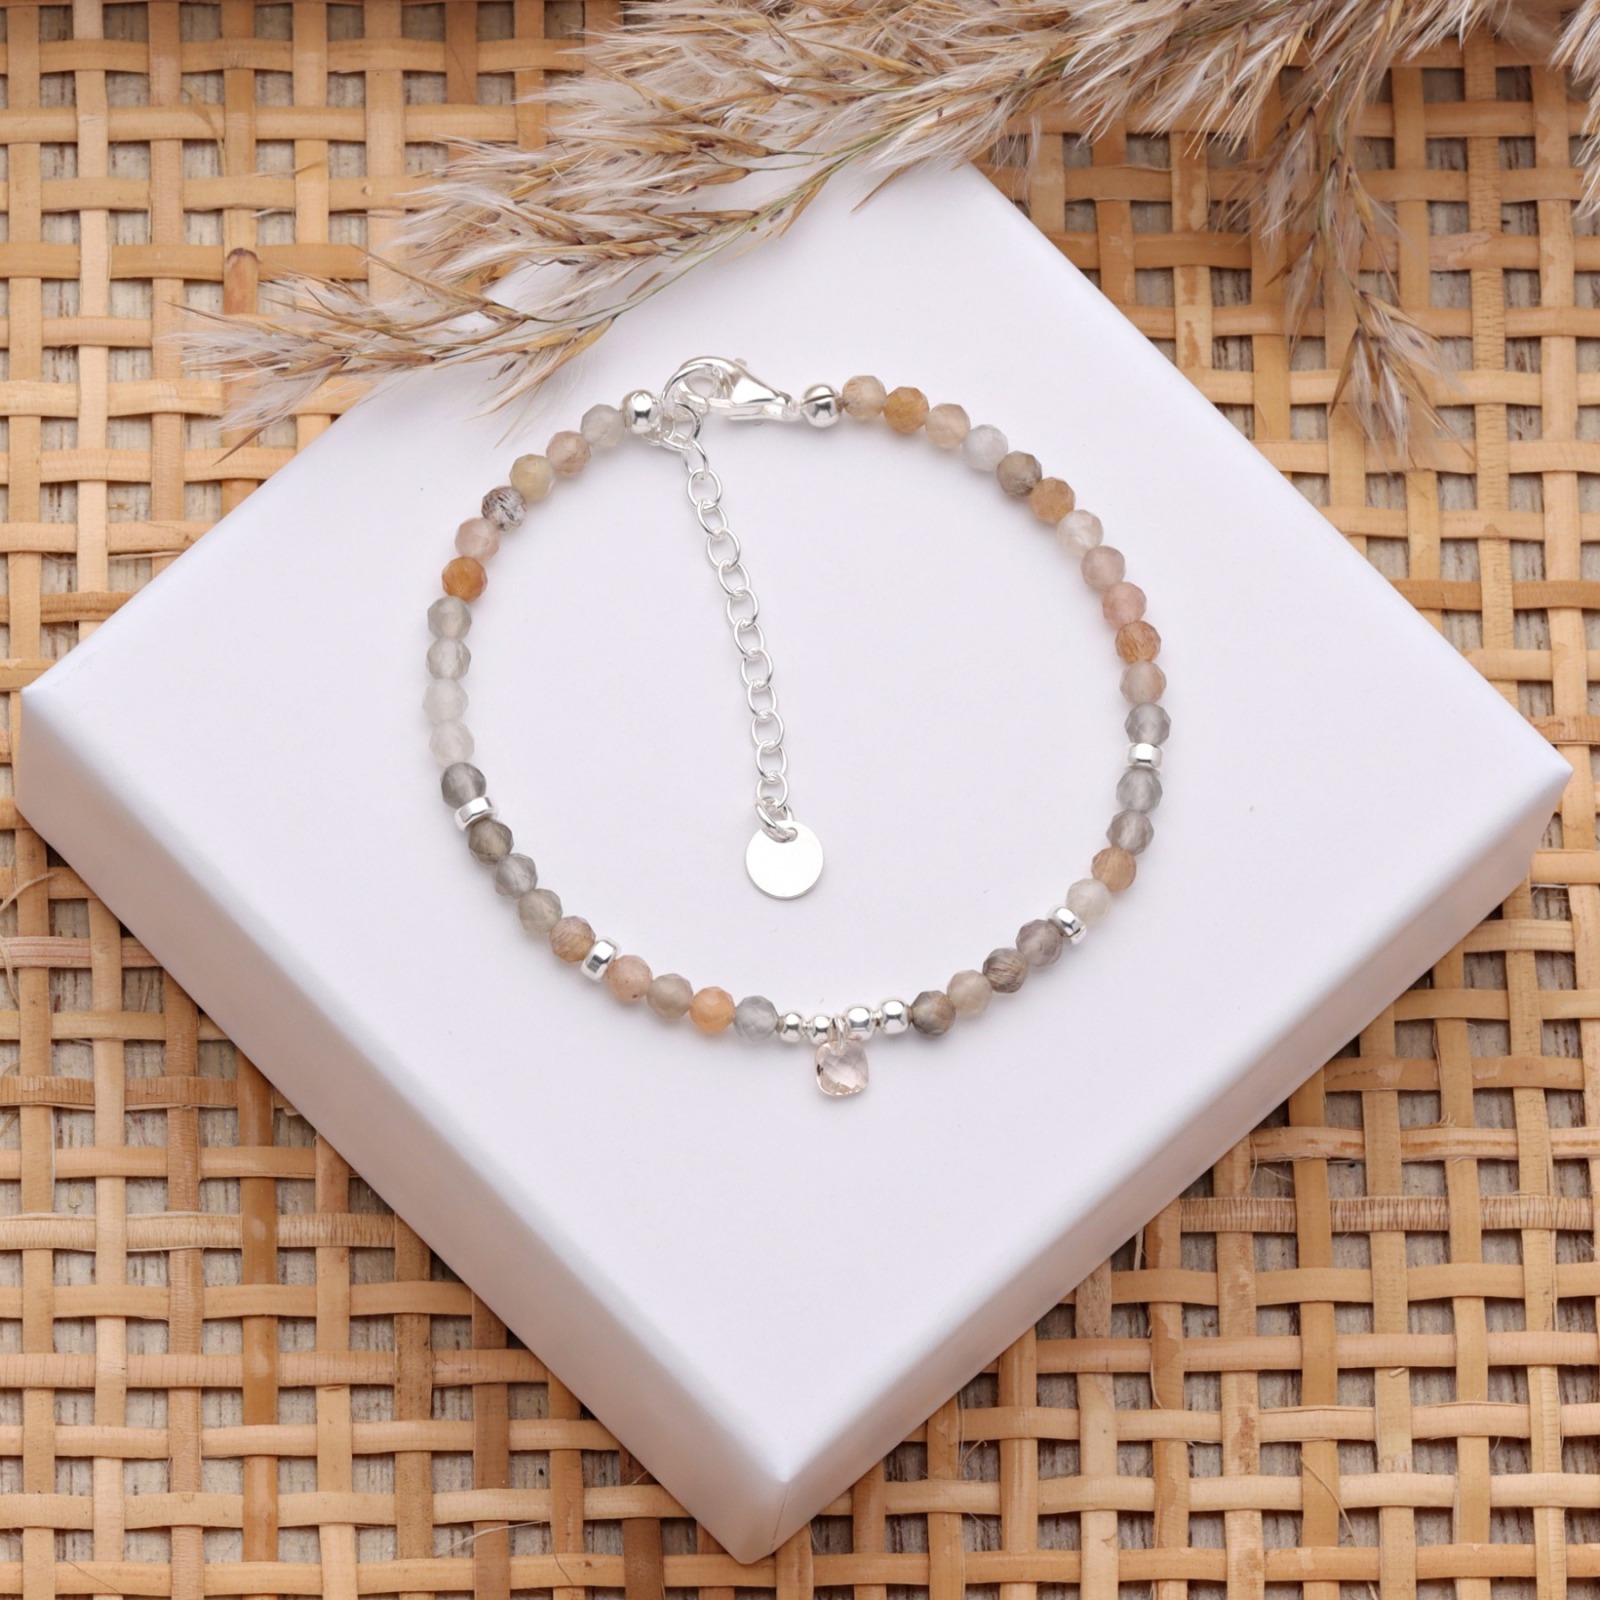 Filigranes Armband aus kleinen Mondsteinen, multicolor mit einem kleinen Kristallanhänger, Silber